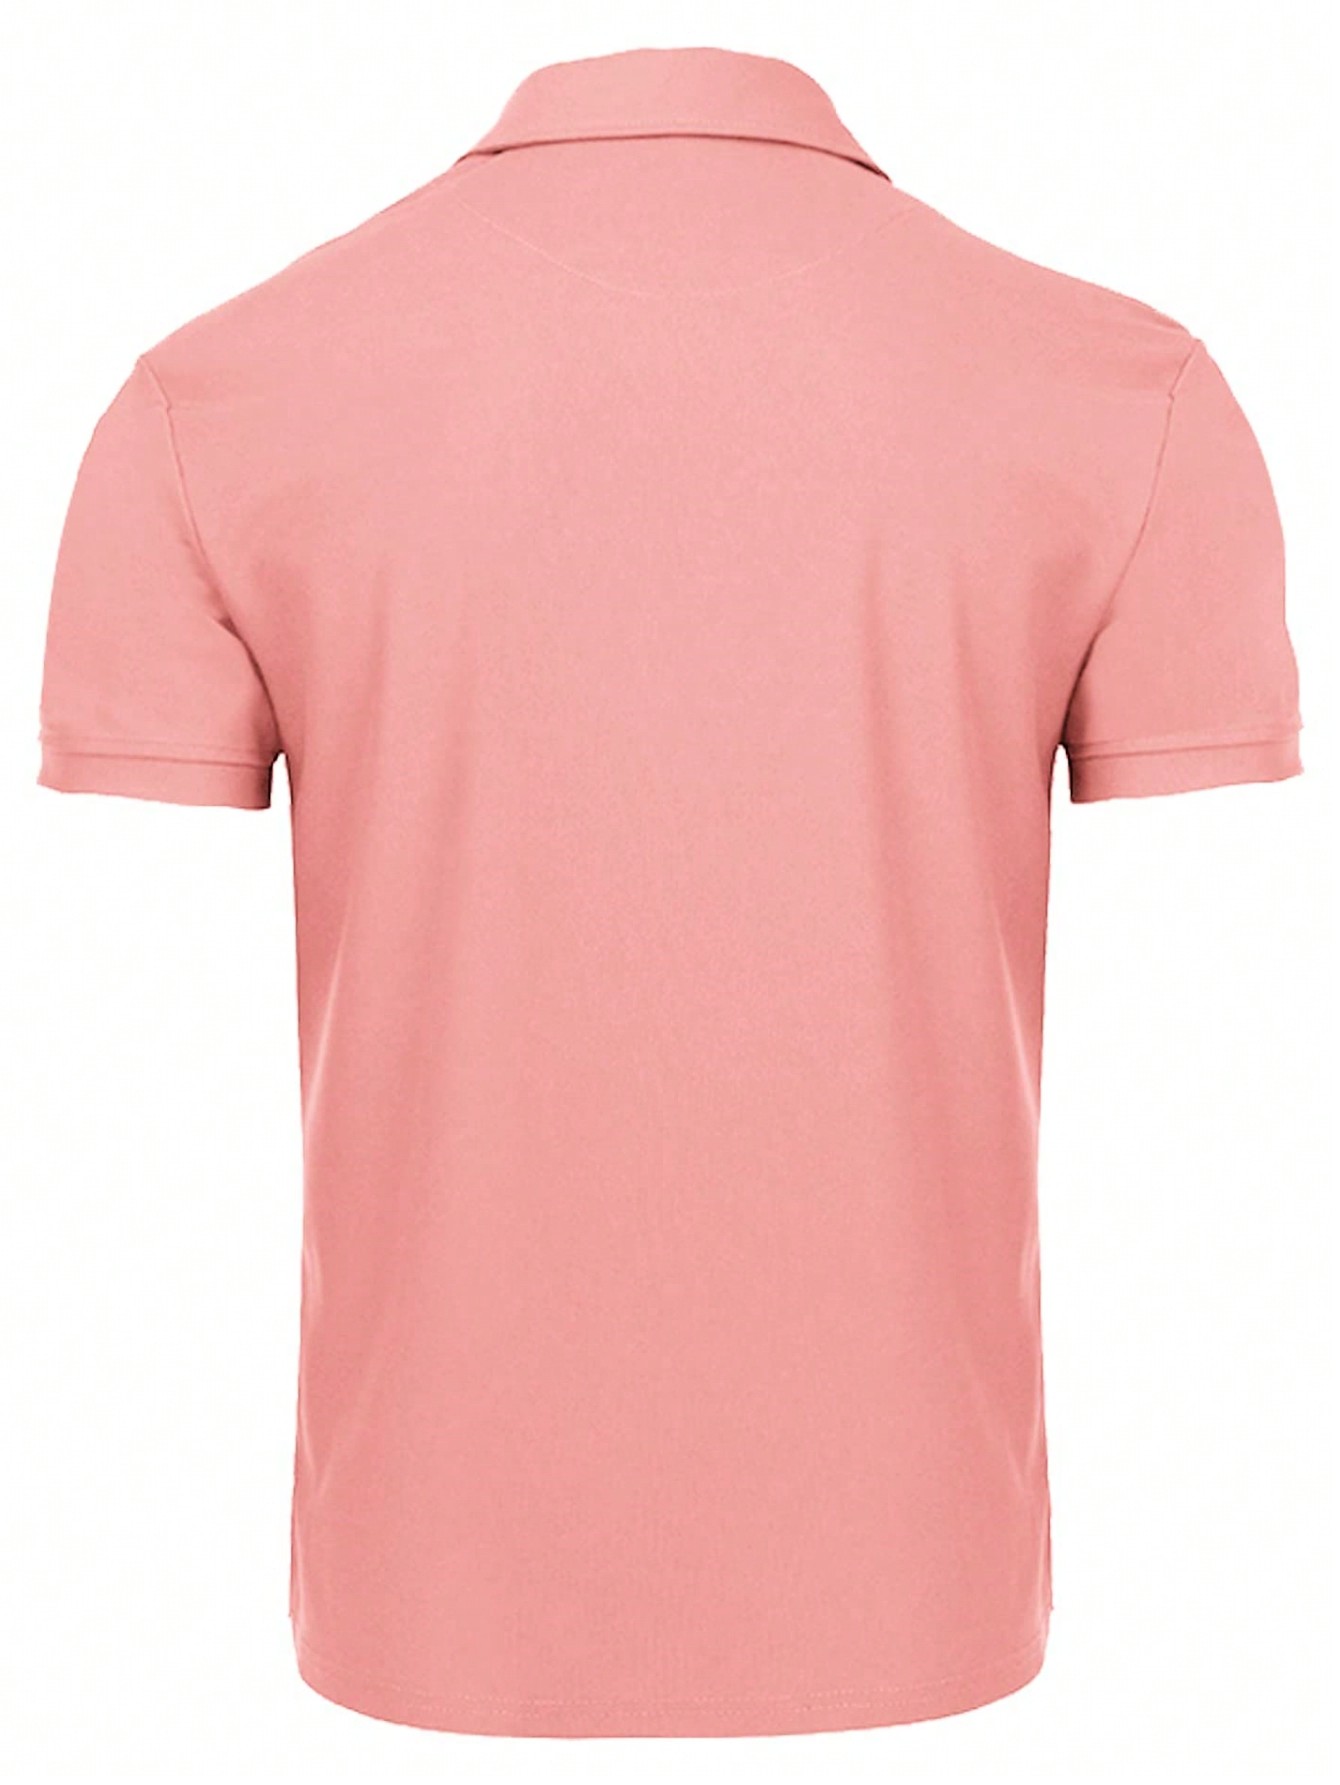 Мужская рубашка поло с коротким рукавом для отдыха, арбуз розовый